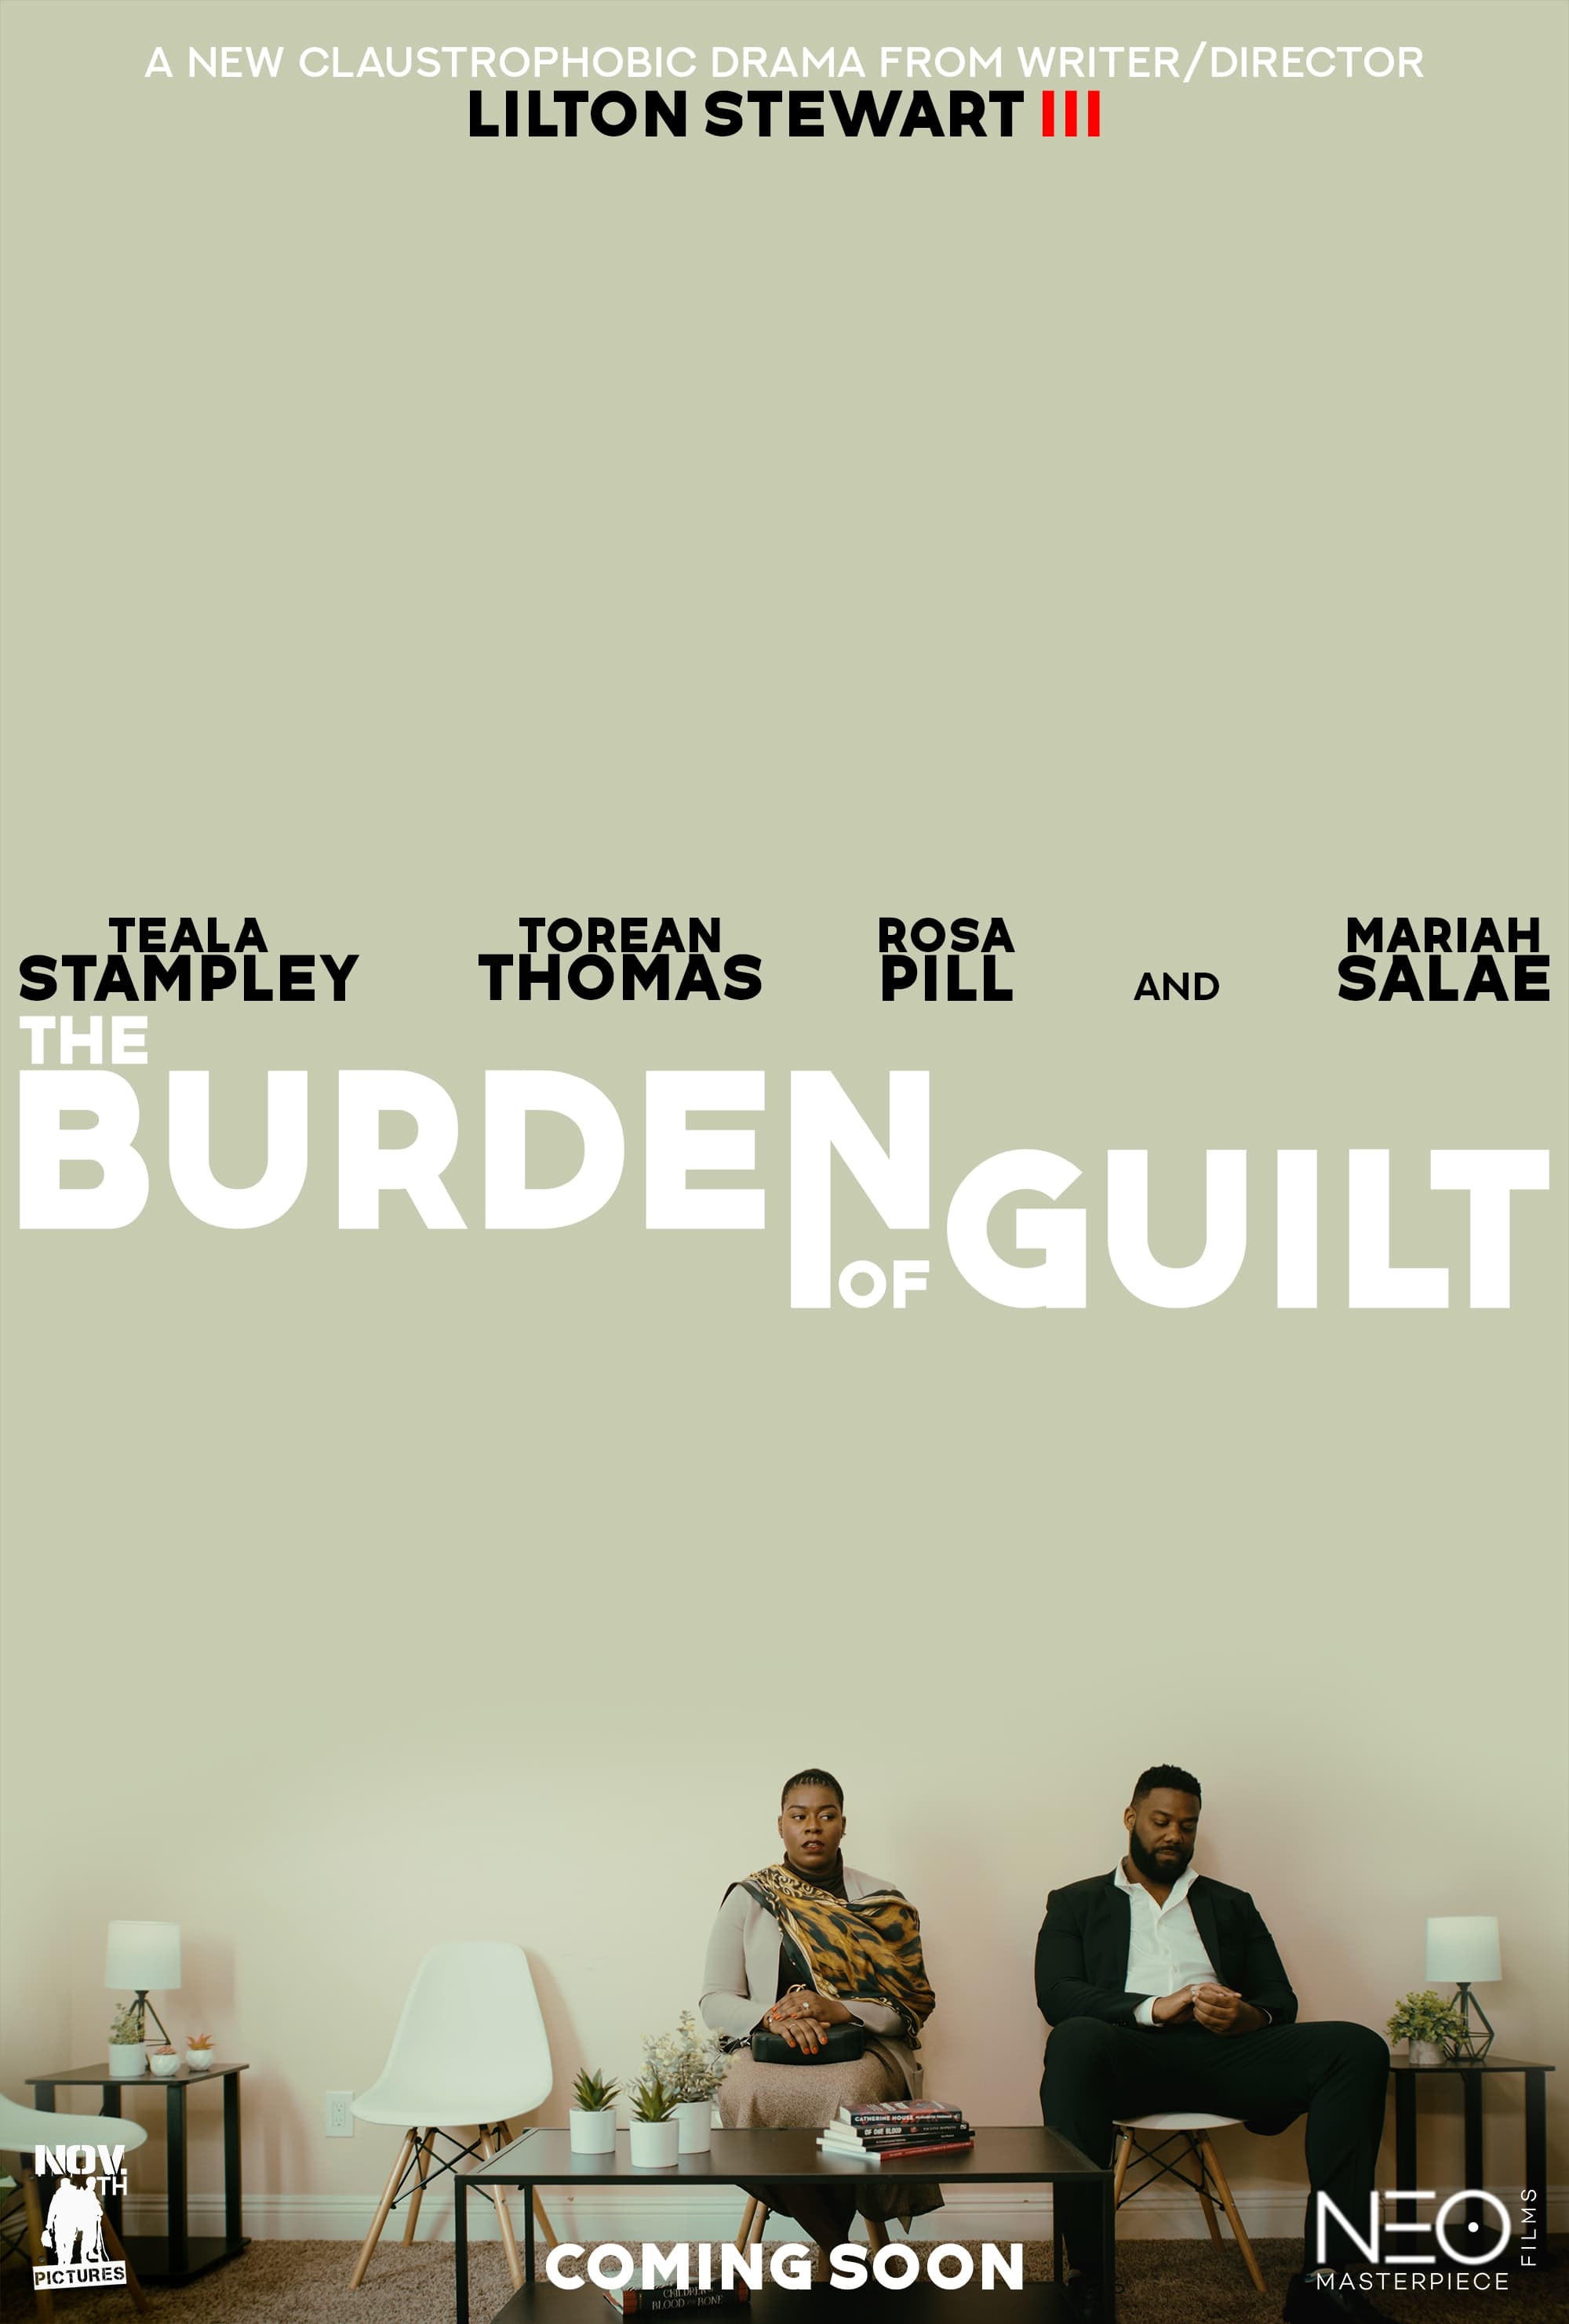 The Burden of Guilt